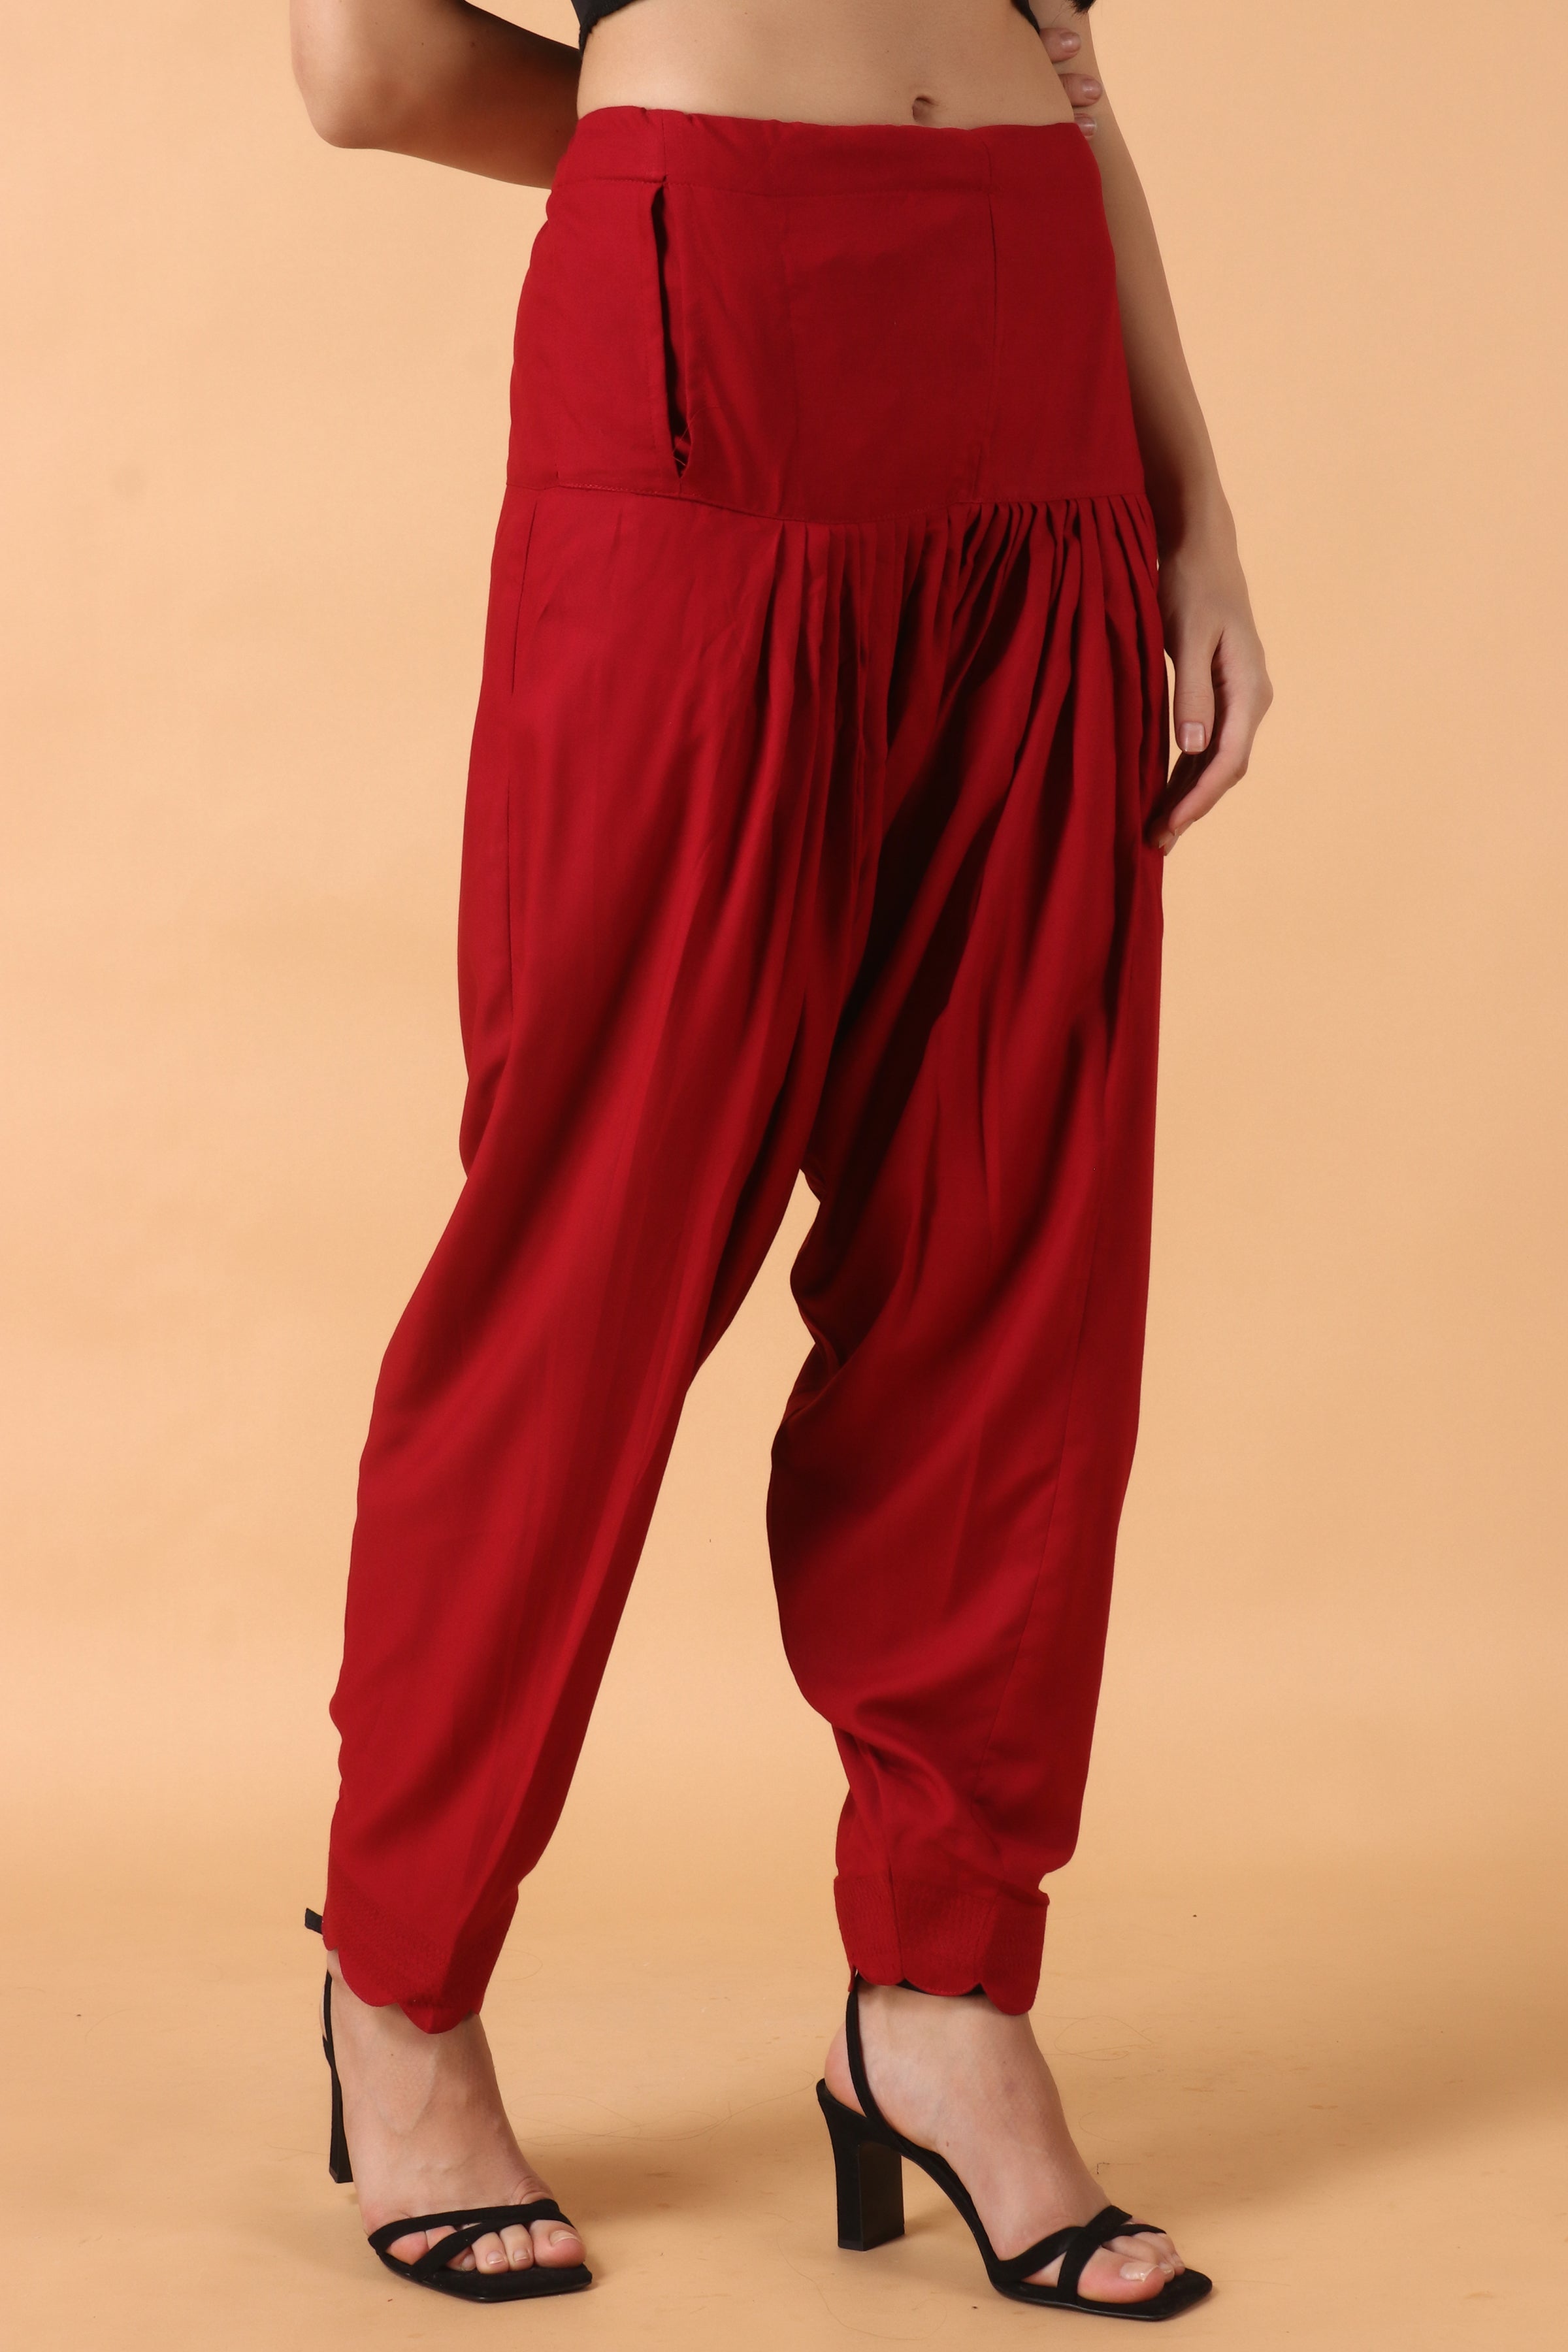 Women's Cotton Patiala Salwar Pants Regular Fit Salwar With Dupatta Combo  Grey | eBay